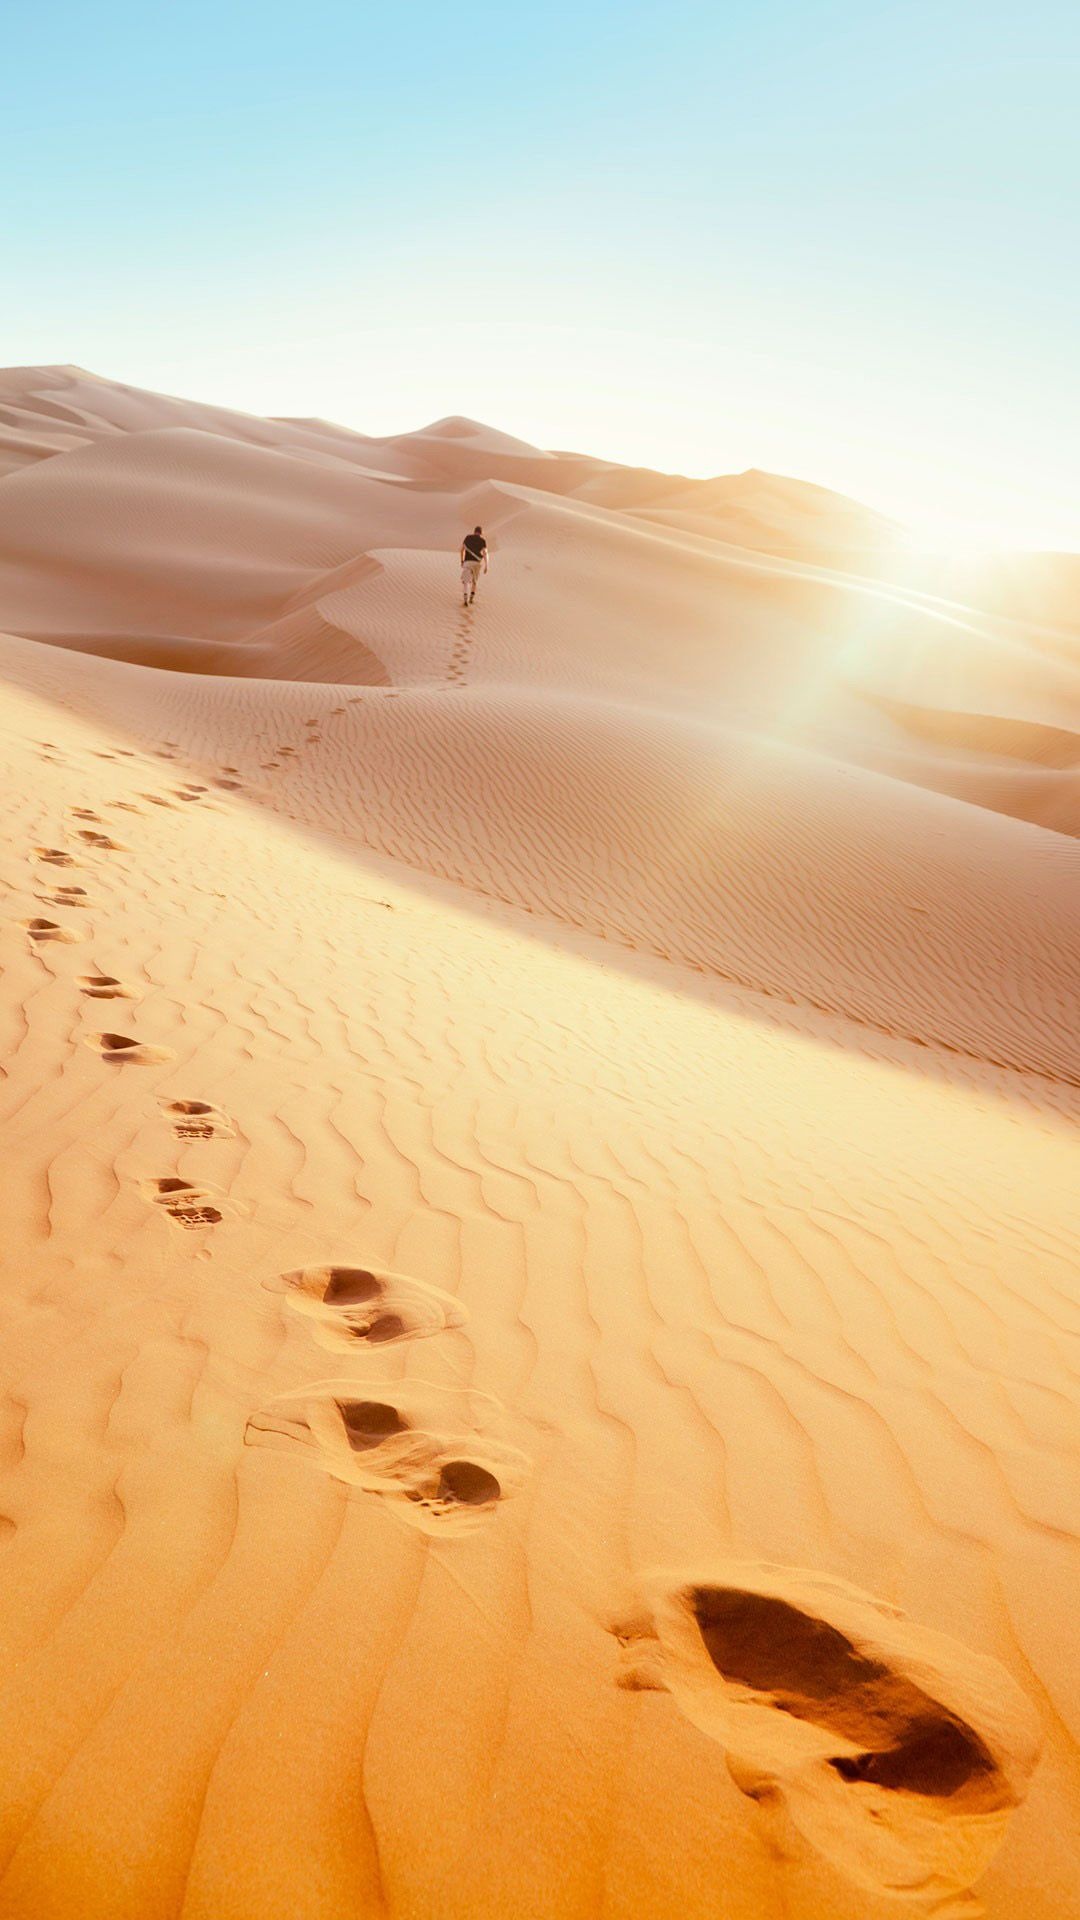 Man footprints, Desert Android wallpaper, Nature iPhone wallpaper, 1080x1920 Full HD Handy